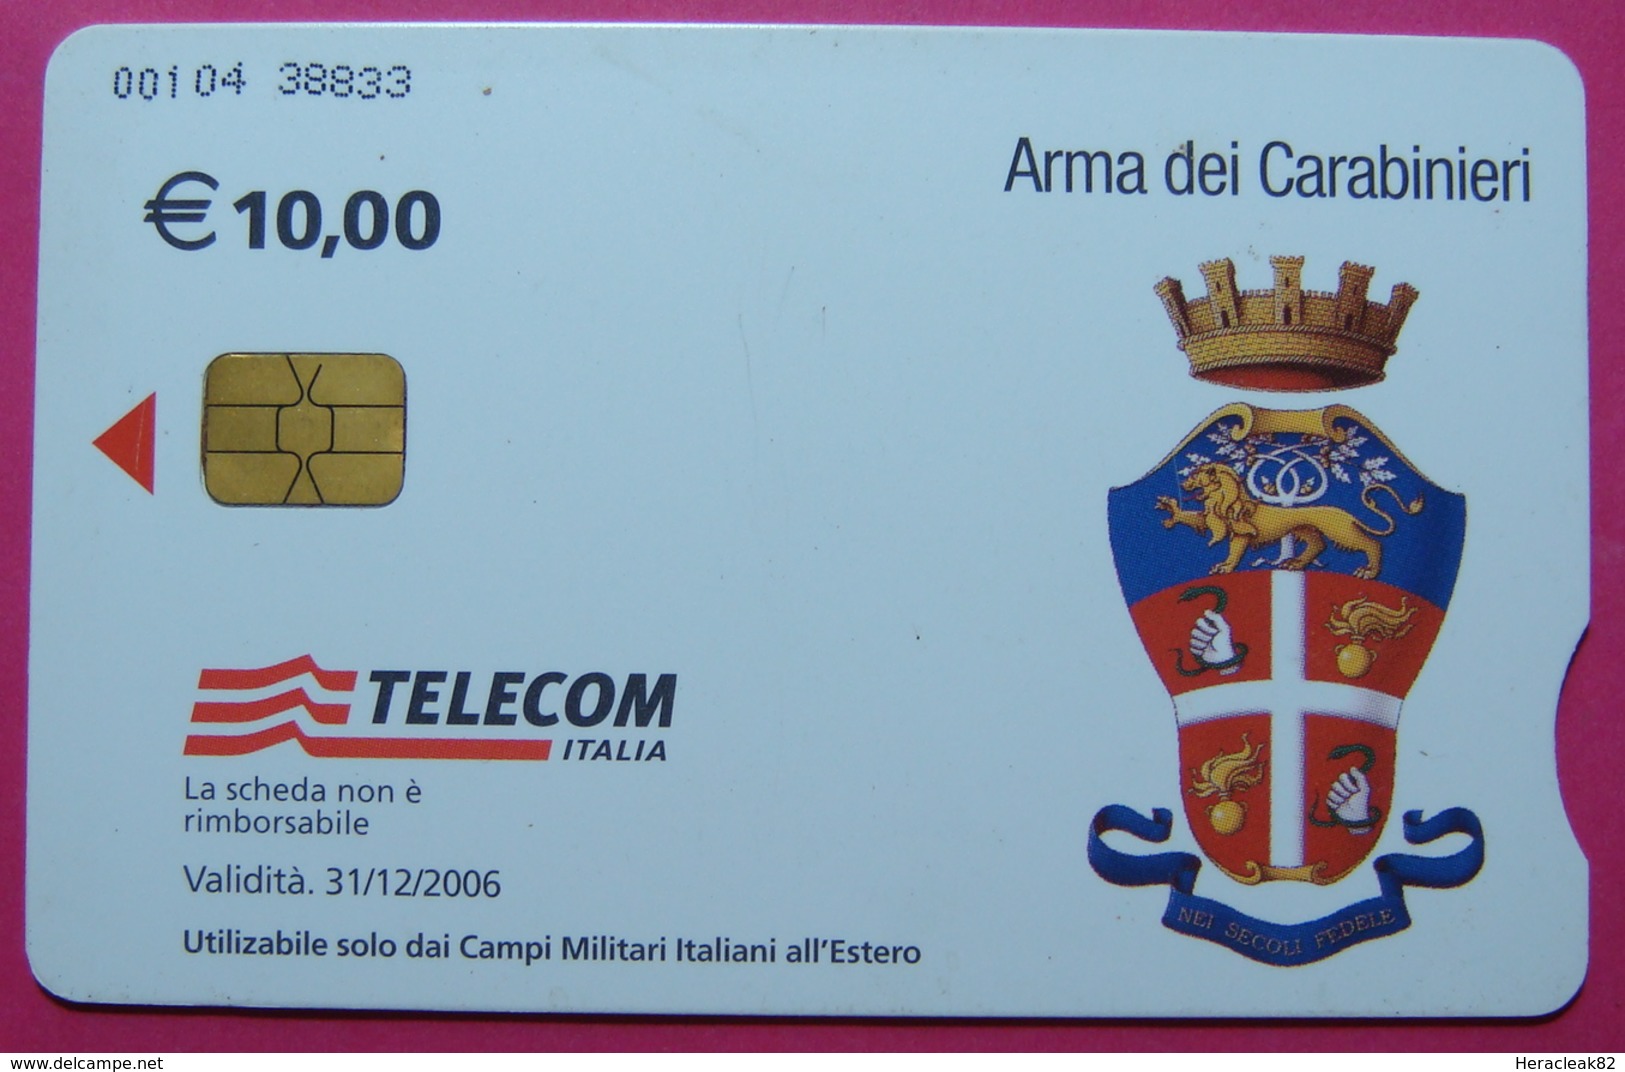 2 Edition KFOR-NATO Kosovo Italian Army In IRAQ CHIP Phonecard, 10 Euro. TELECOM ITALIA, *Arma Dei Carabinieri, Doctor* - Iraq